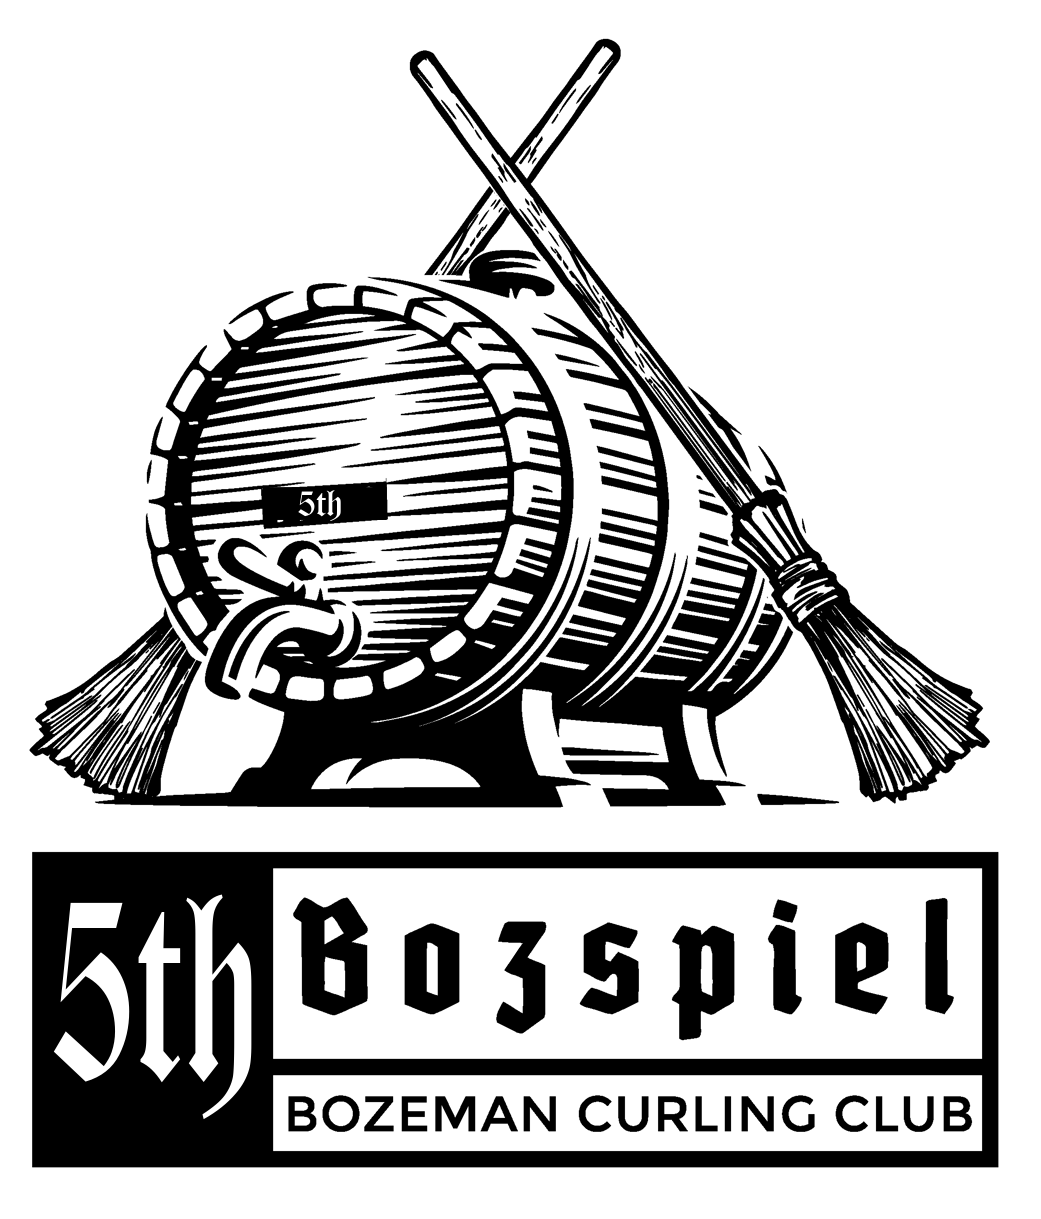 5th Annual Bozspiel Jan 14th-16th